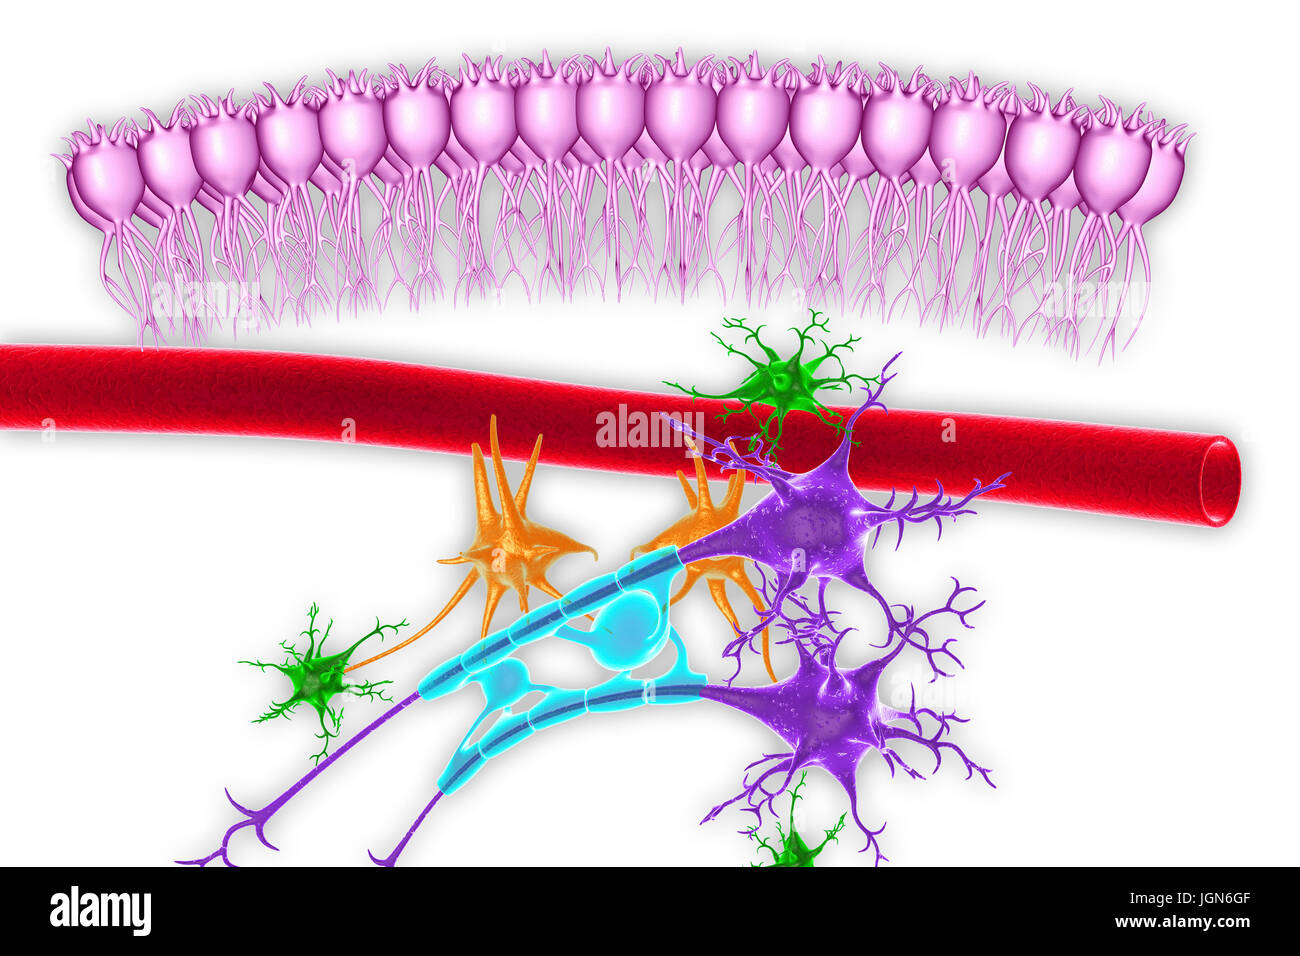 Cervello il tessuto nervoso, illustrazione. Visto qui sono cellule ependimali (rosa), un capillare (rosso), astrociti (verdi), cellule microgliali (arancione) e due cellule nervose (viola) con guaine mieliniche (luce blu) sulla loro assoni. Foto Stock